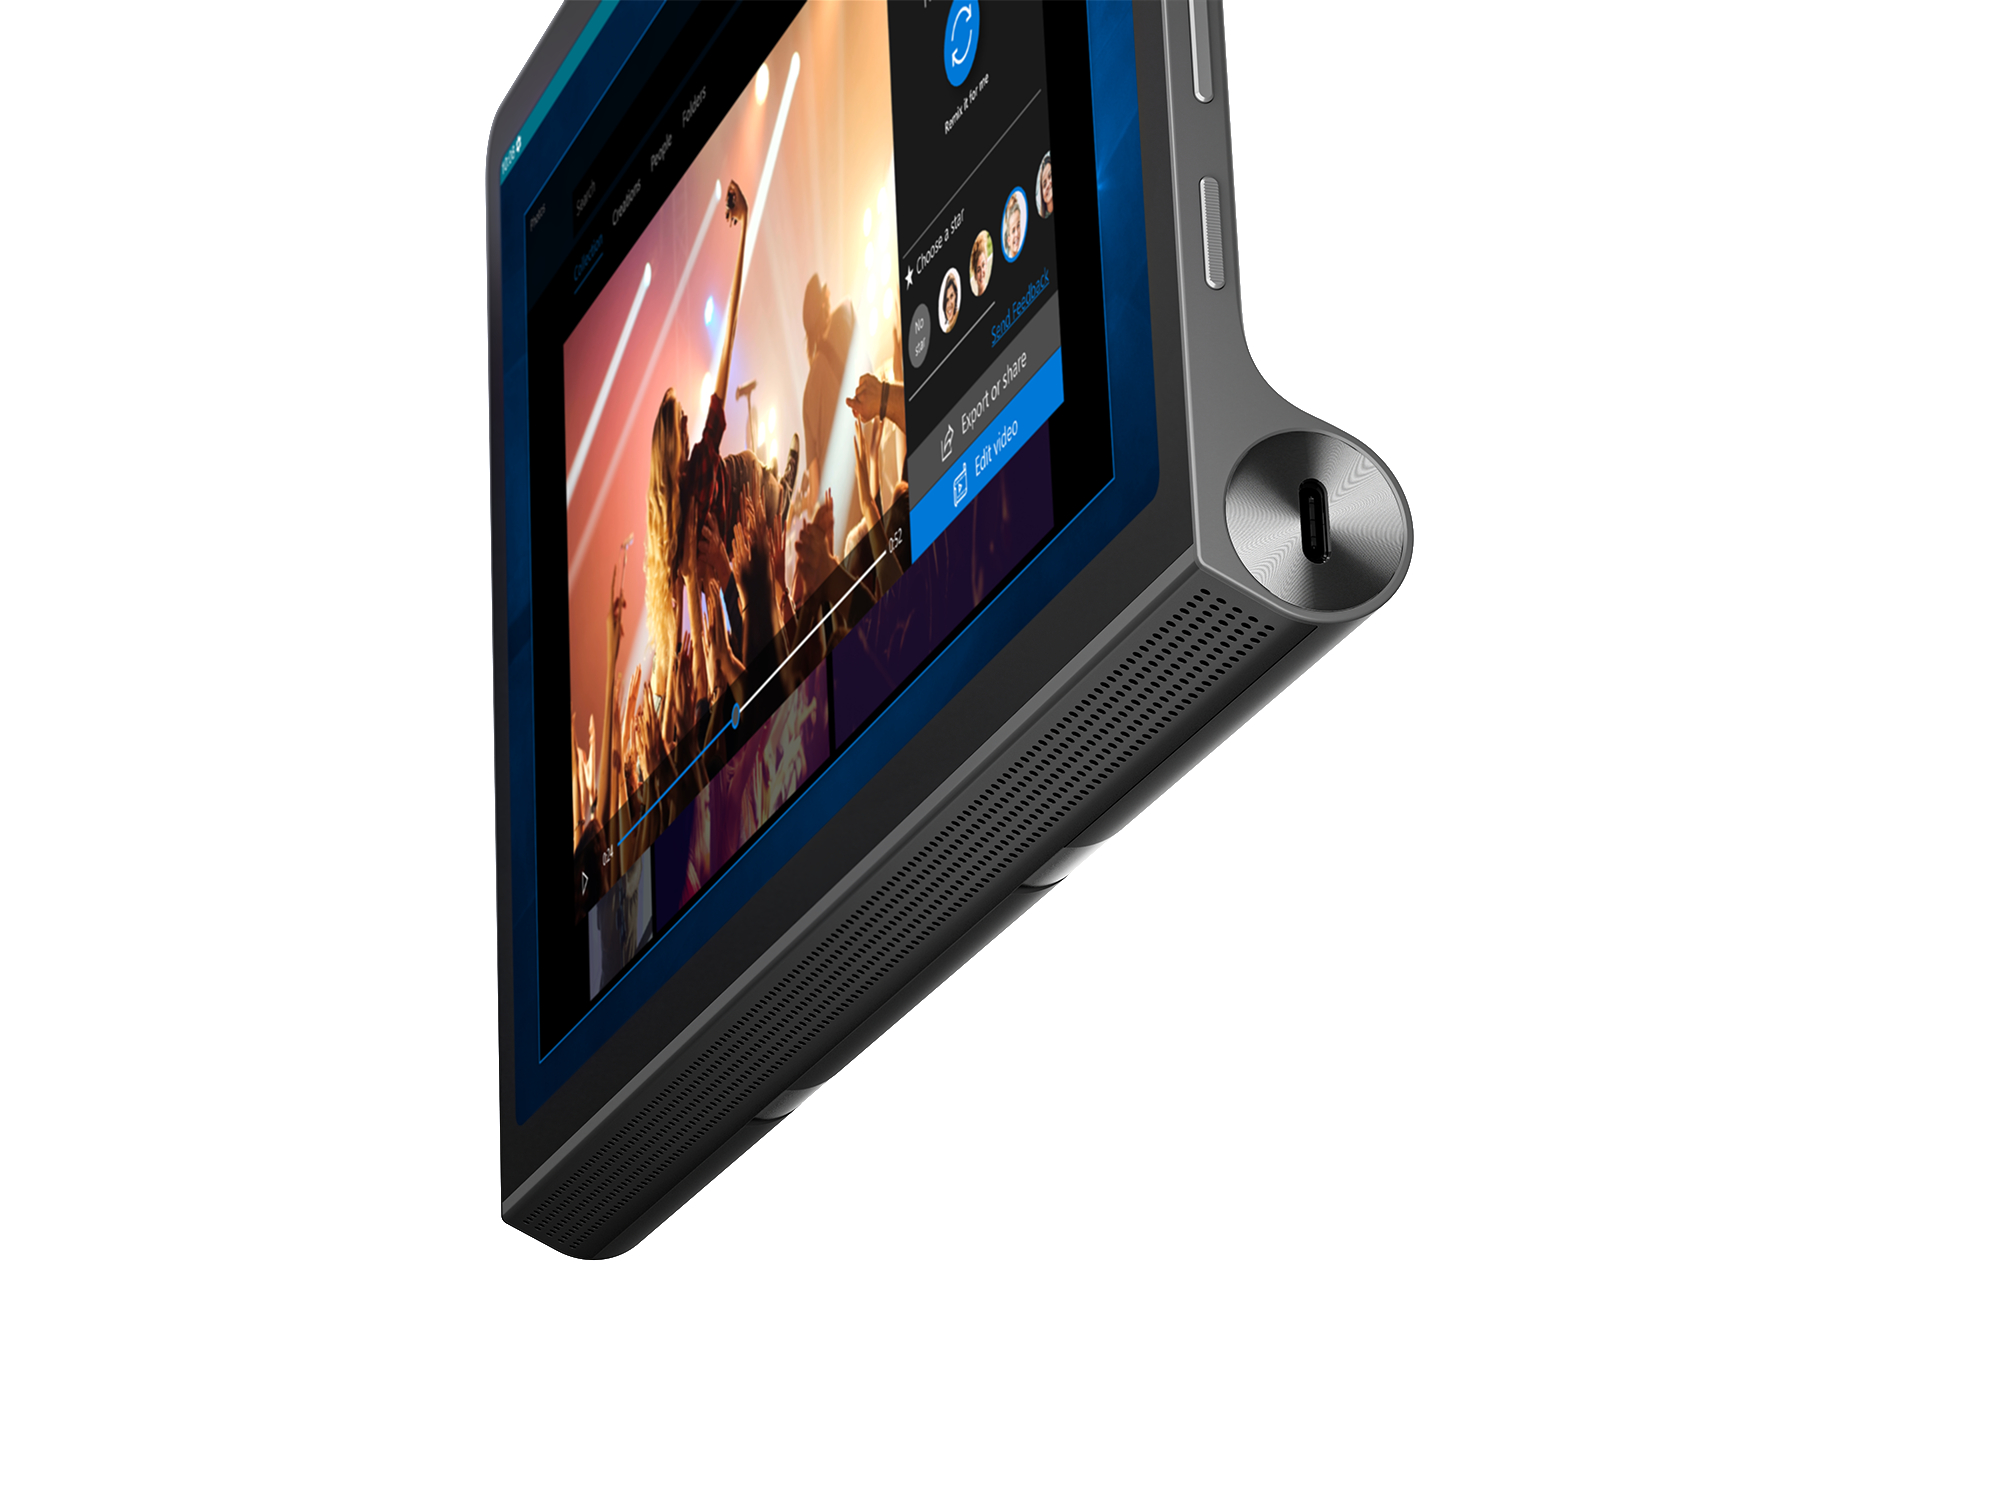 Yoga Tablet, 256 Tab Zoll, Dunkelgrau LENOVO 11 GB, 11,